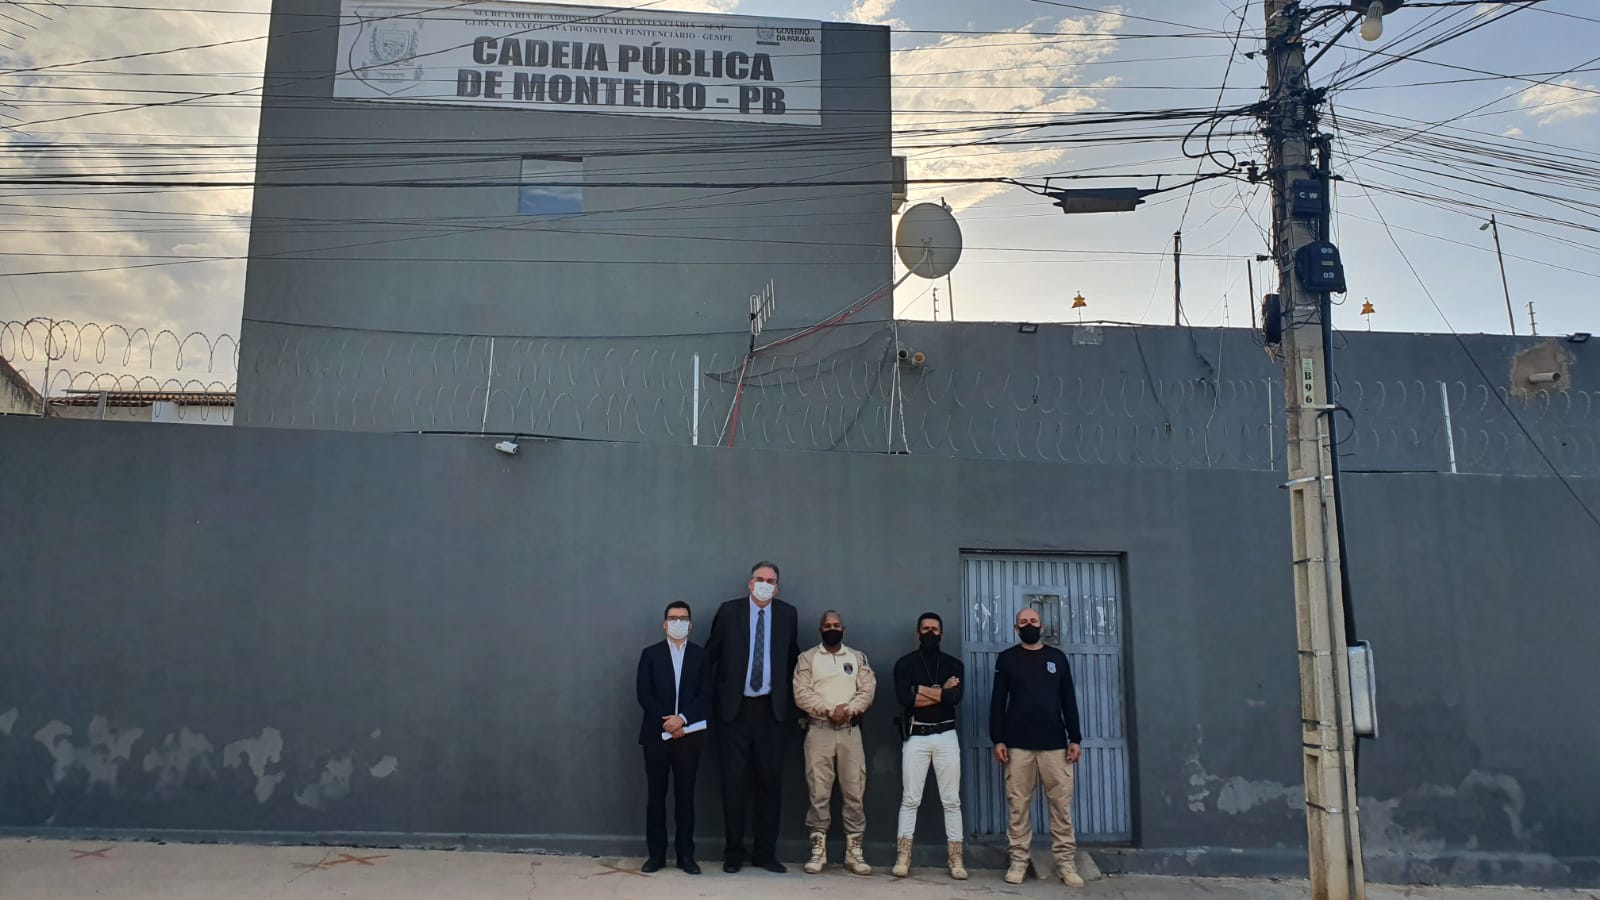 Cadeia-publica-de-Monteiro-01 Cadeia pública de Monteiro e mais quatro cidades da Região do Cariri paraibano são inspecionadas pela CGJ